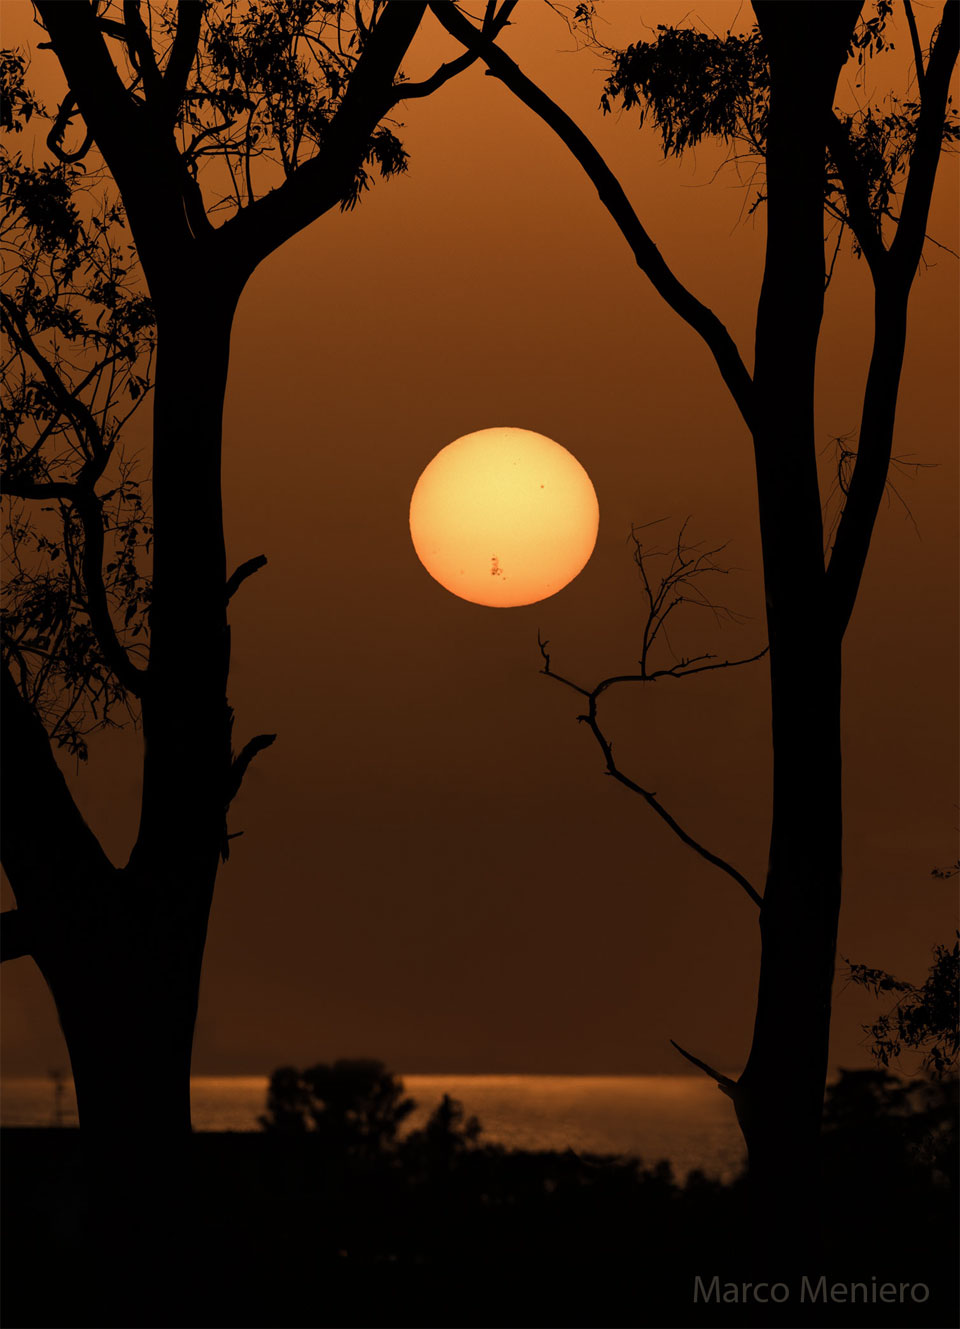 Na zdjęciu widoczne jest odległe Słońce nad wodą między drzewami na pierwszym planie.
W dolnej części tarczy słonecznej znajduje się olbrzymi obszar aktywny AR 3664, widoczny dzięki
jego ciemnym plamom słonecznym. Więcej szczegółowych informacji w opisie poniżej.